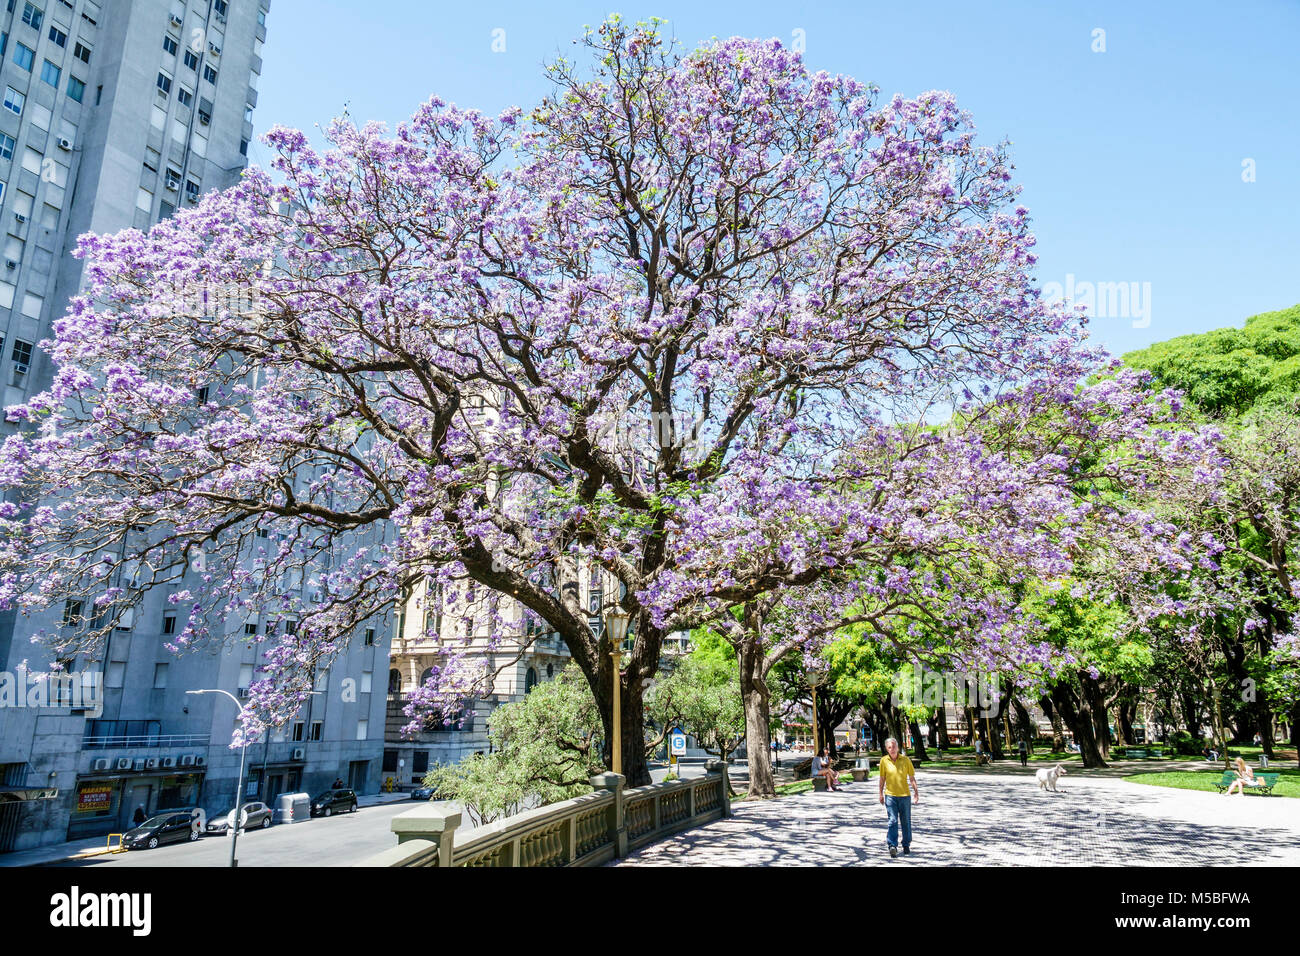 Buenos Aires Argentinien, Plaza San Martin, Park, Grünfläche, Jacaranda mimosifolia, subtropischer Baum, blau-violette Blumen, blühend, Schatten, Mann Männer männlich, walki Stockfoto